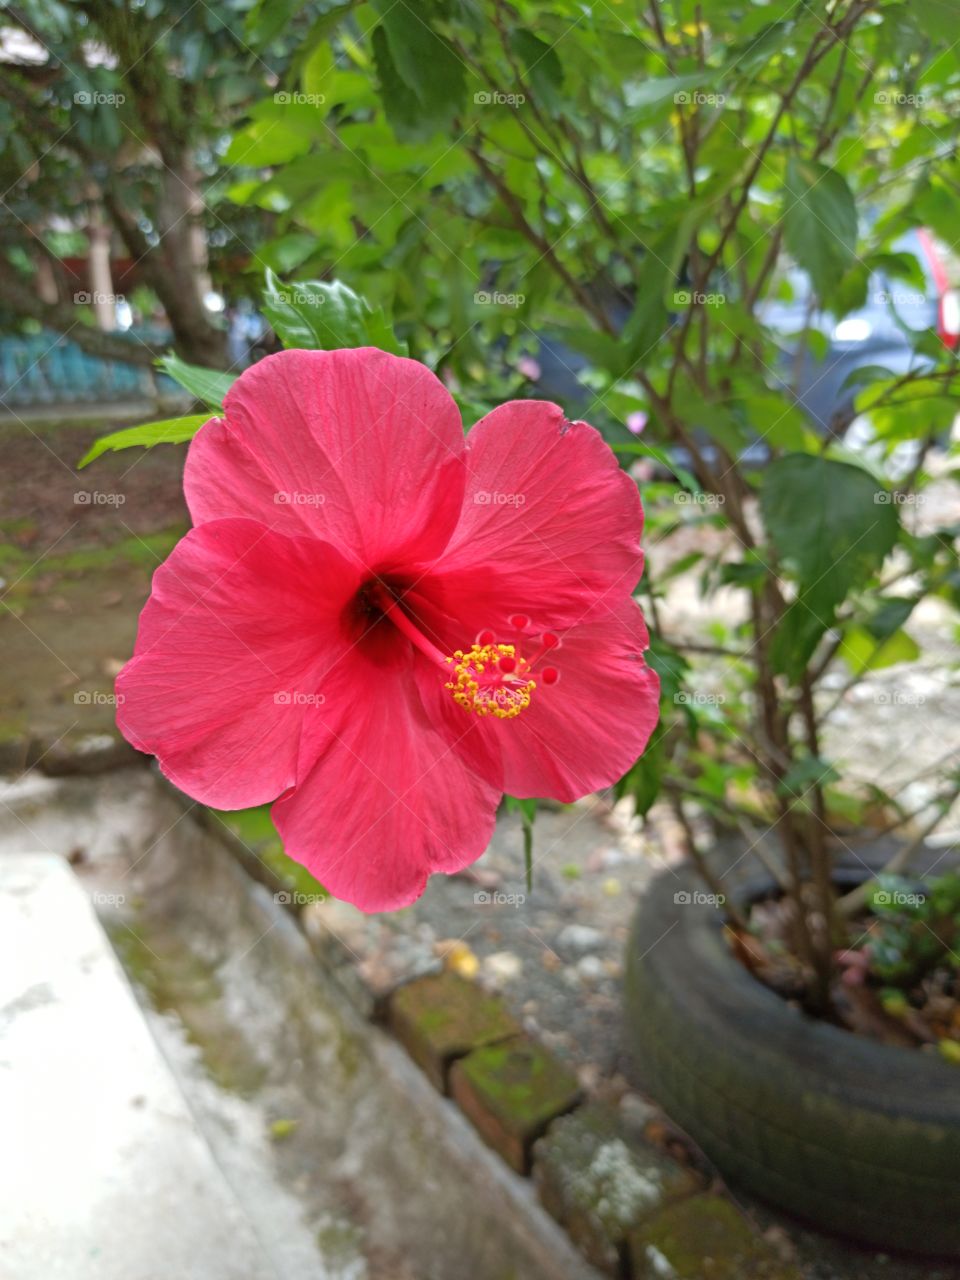 malaysia flowers